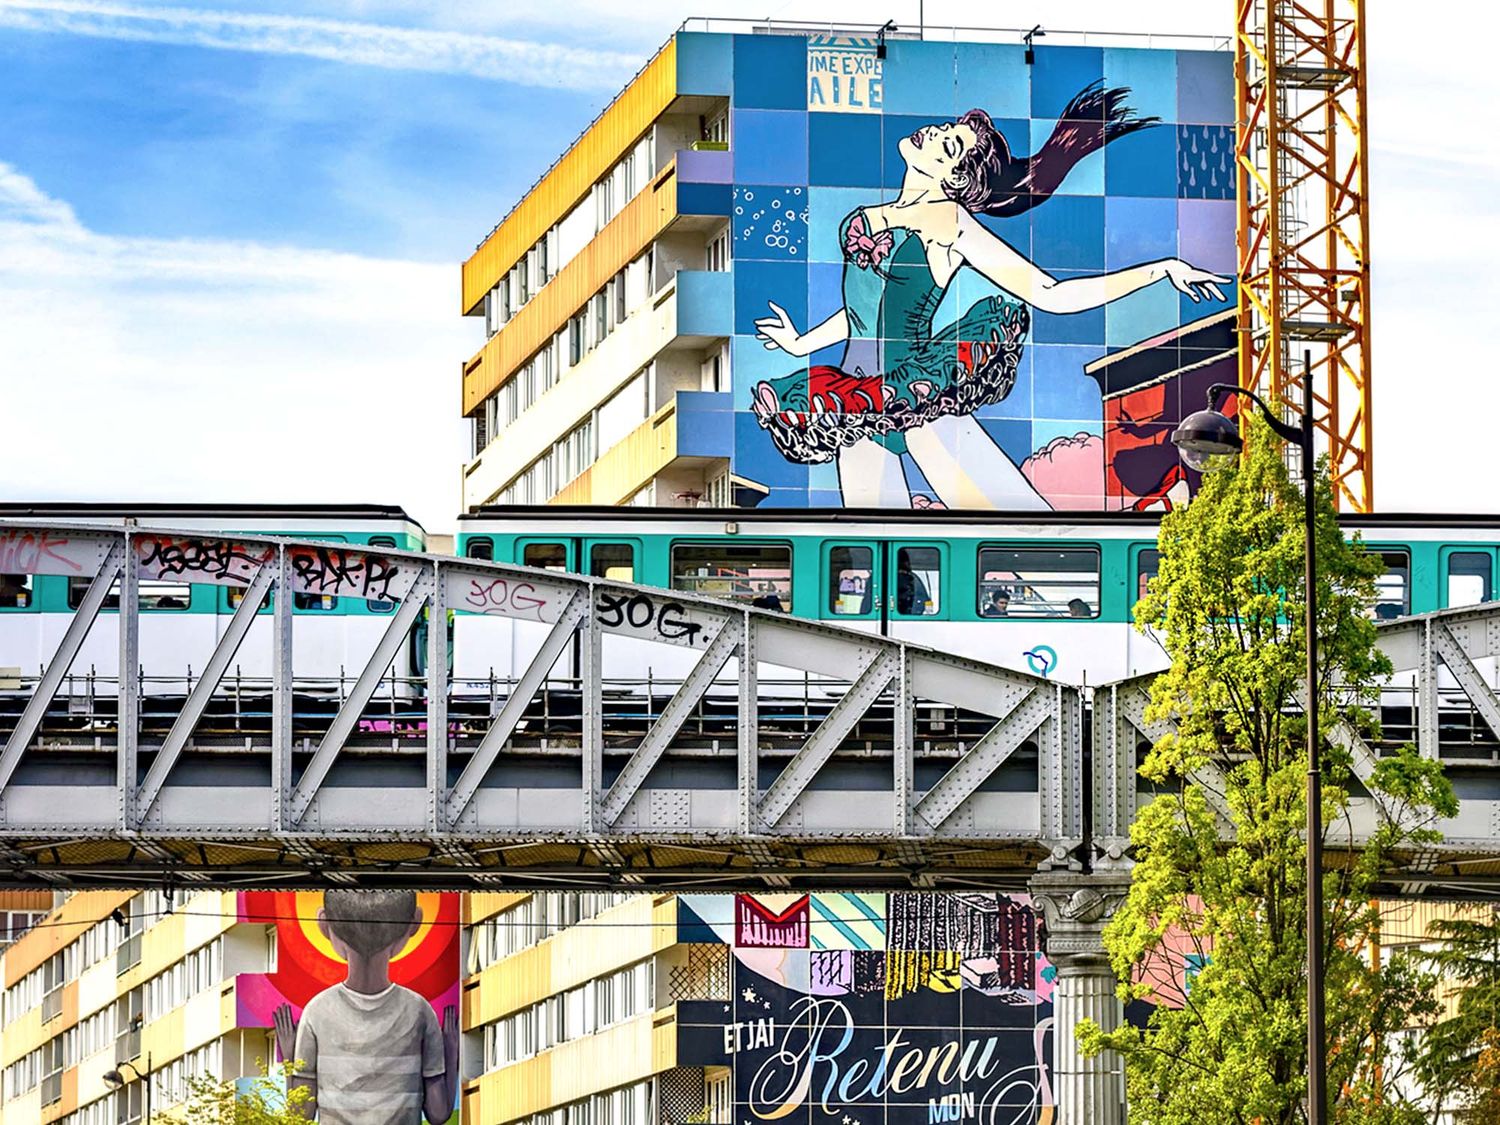 Véritable musée à ciel ouvert, le projet Boulevard Paris 13 a permis la mise en œuvre de fresques monumentales par des artistes majeurs au cœur du 13ème arrondissement de Paris (©B.Hogues).